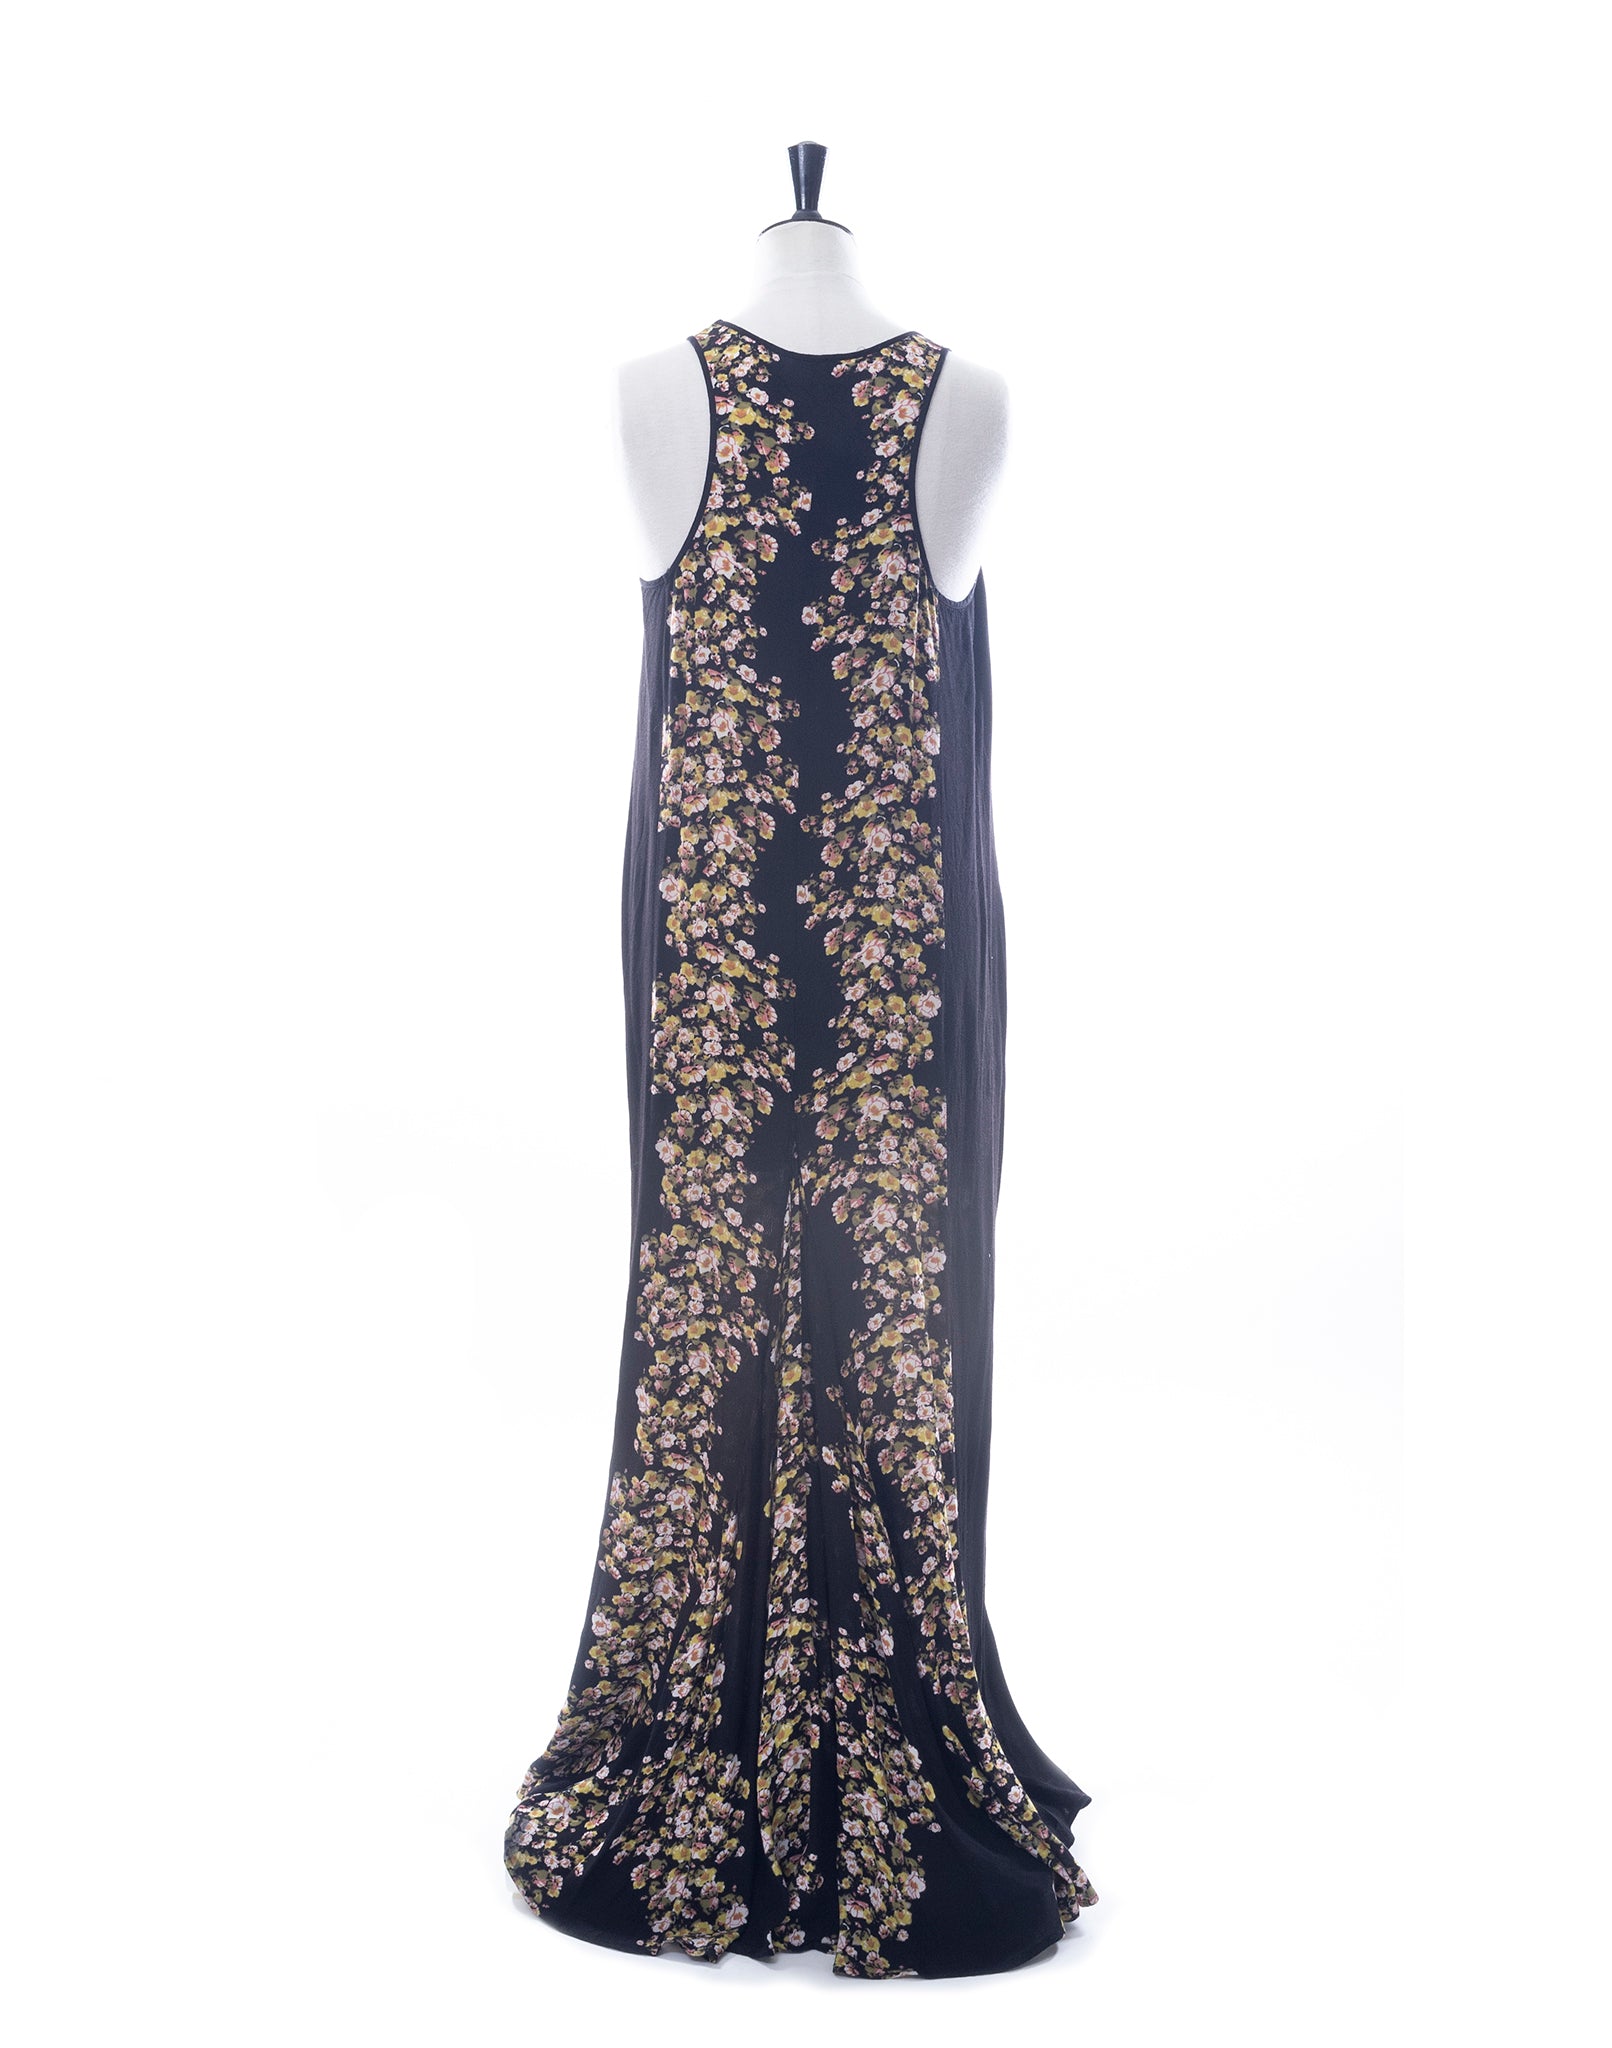 Vintage 00's Black Floral Racerback Maxi Dress - Size S / M